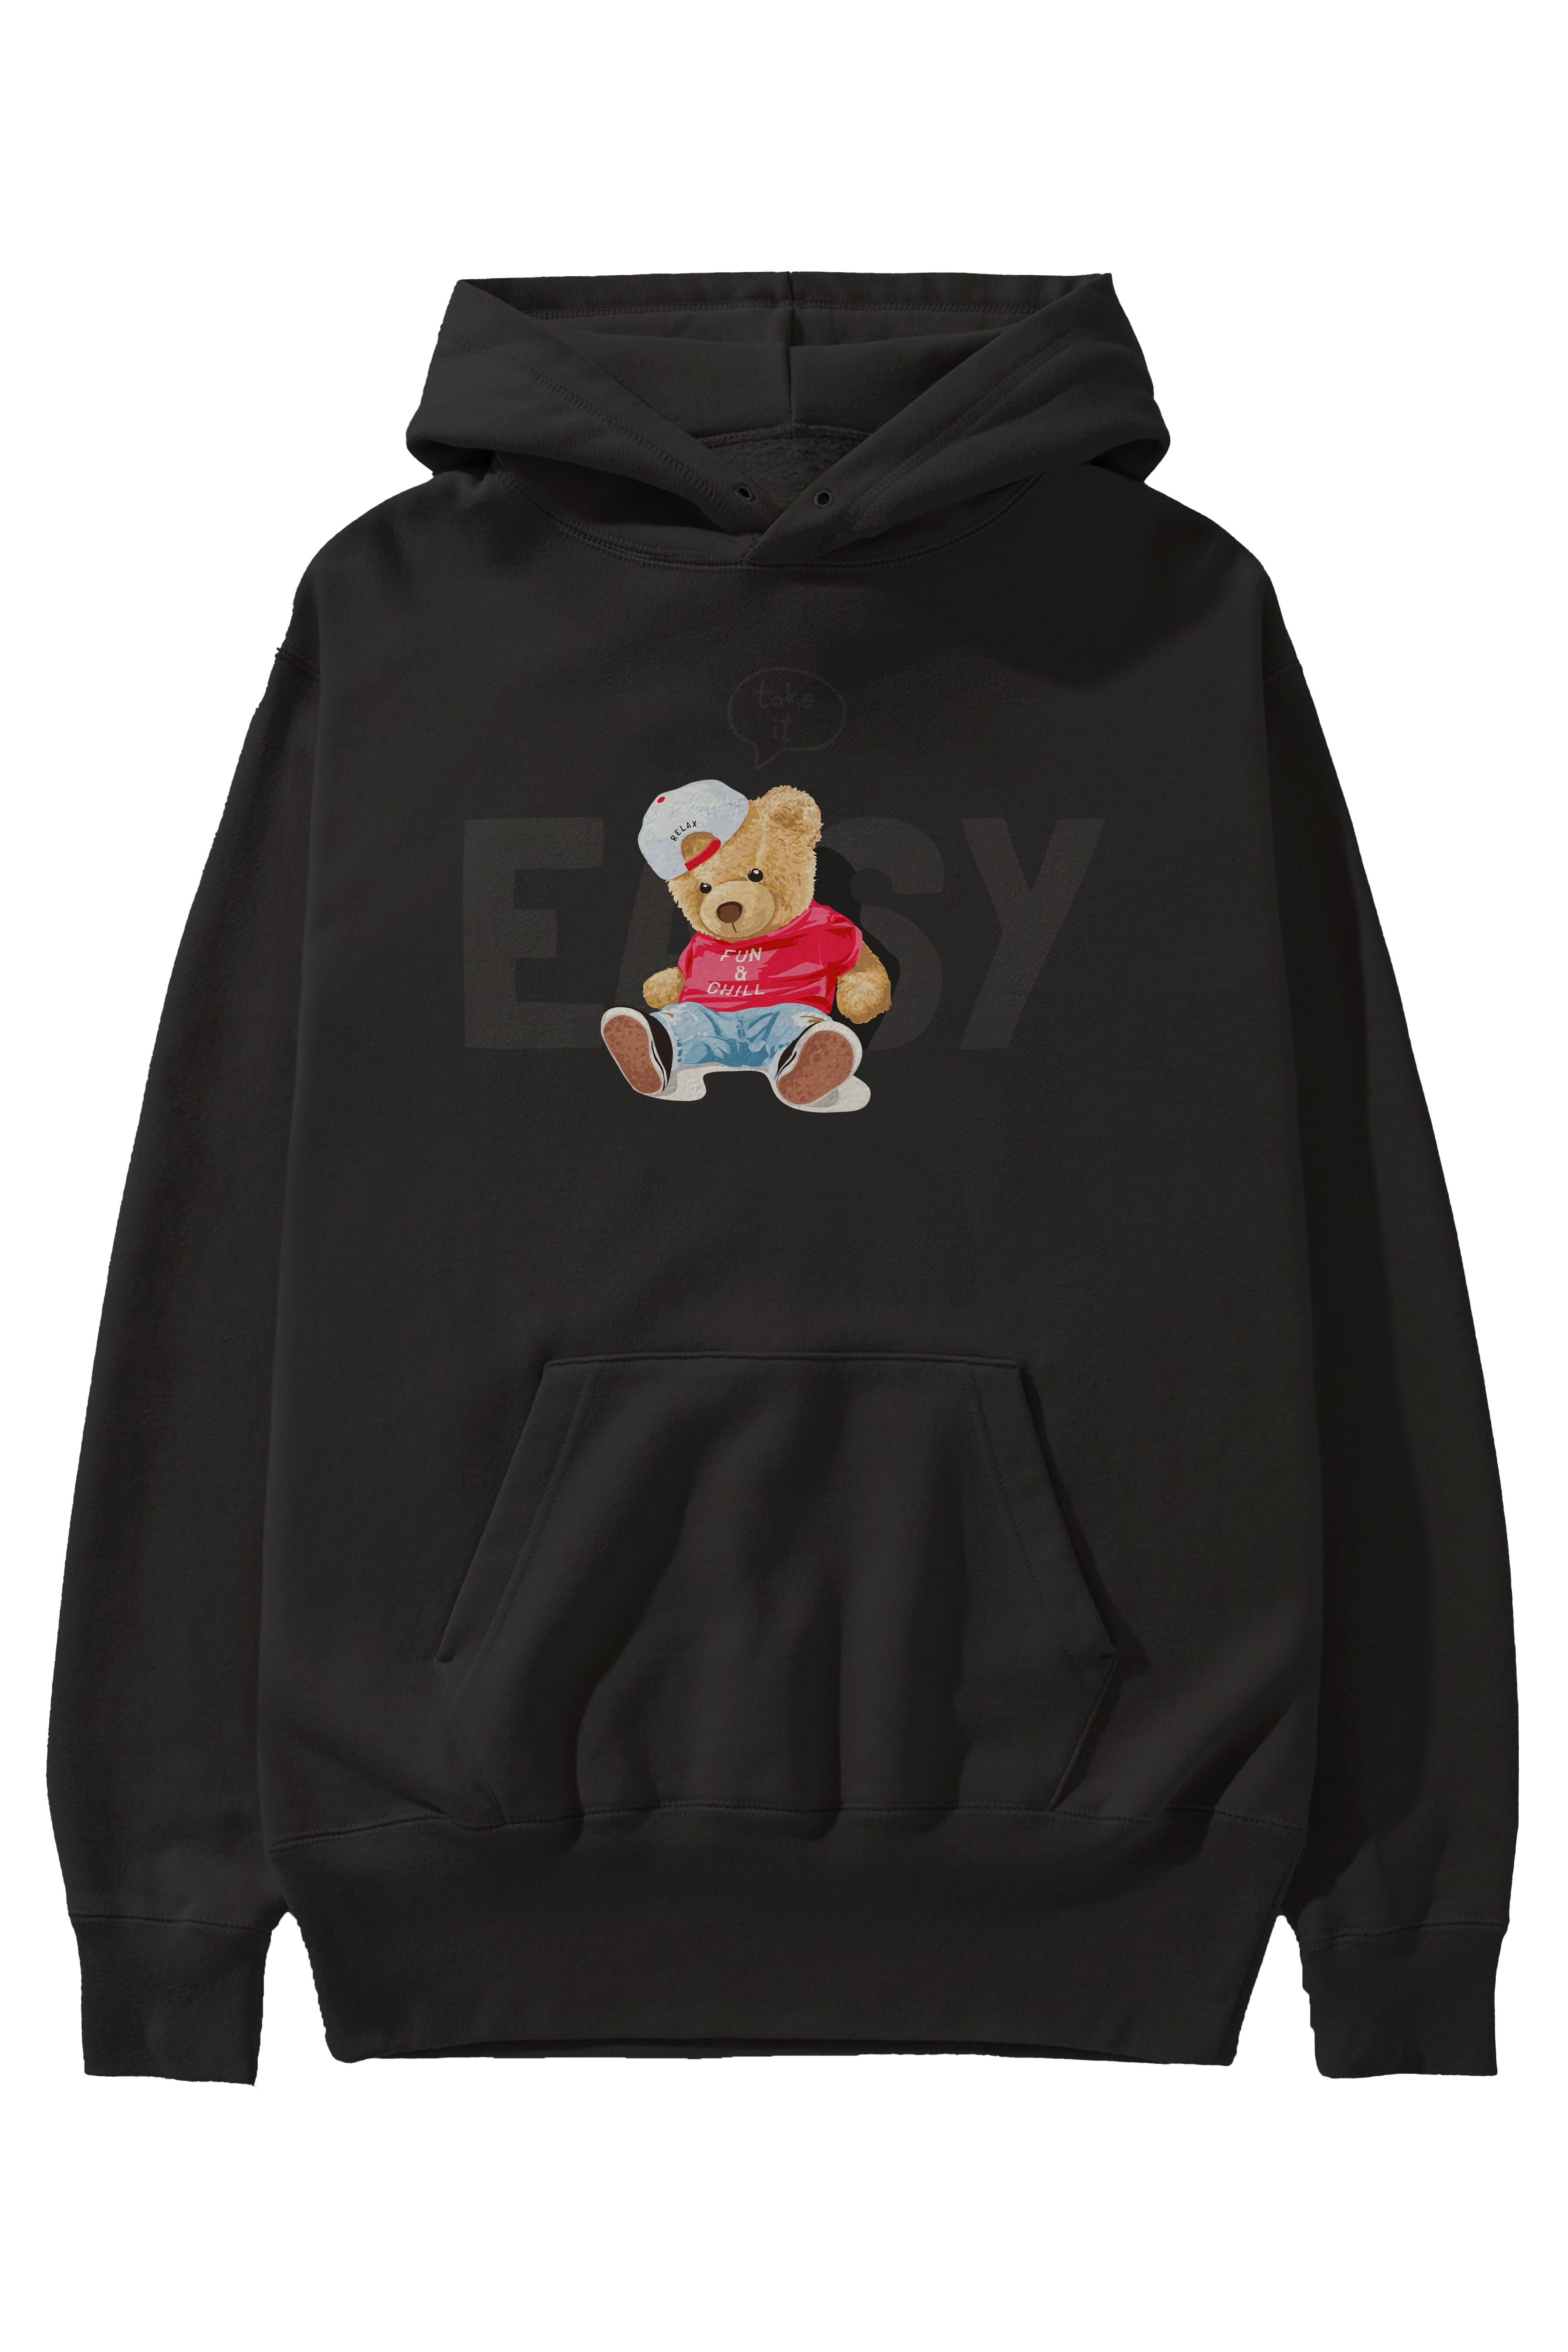 Teddy Bear Easy Ön Baskılı Hoodie Oversize Kapüşonlu Sweatshirt Erkek Kadın Unisex